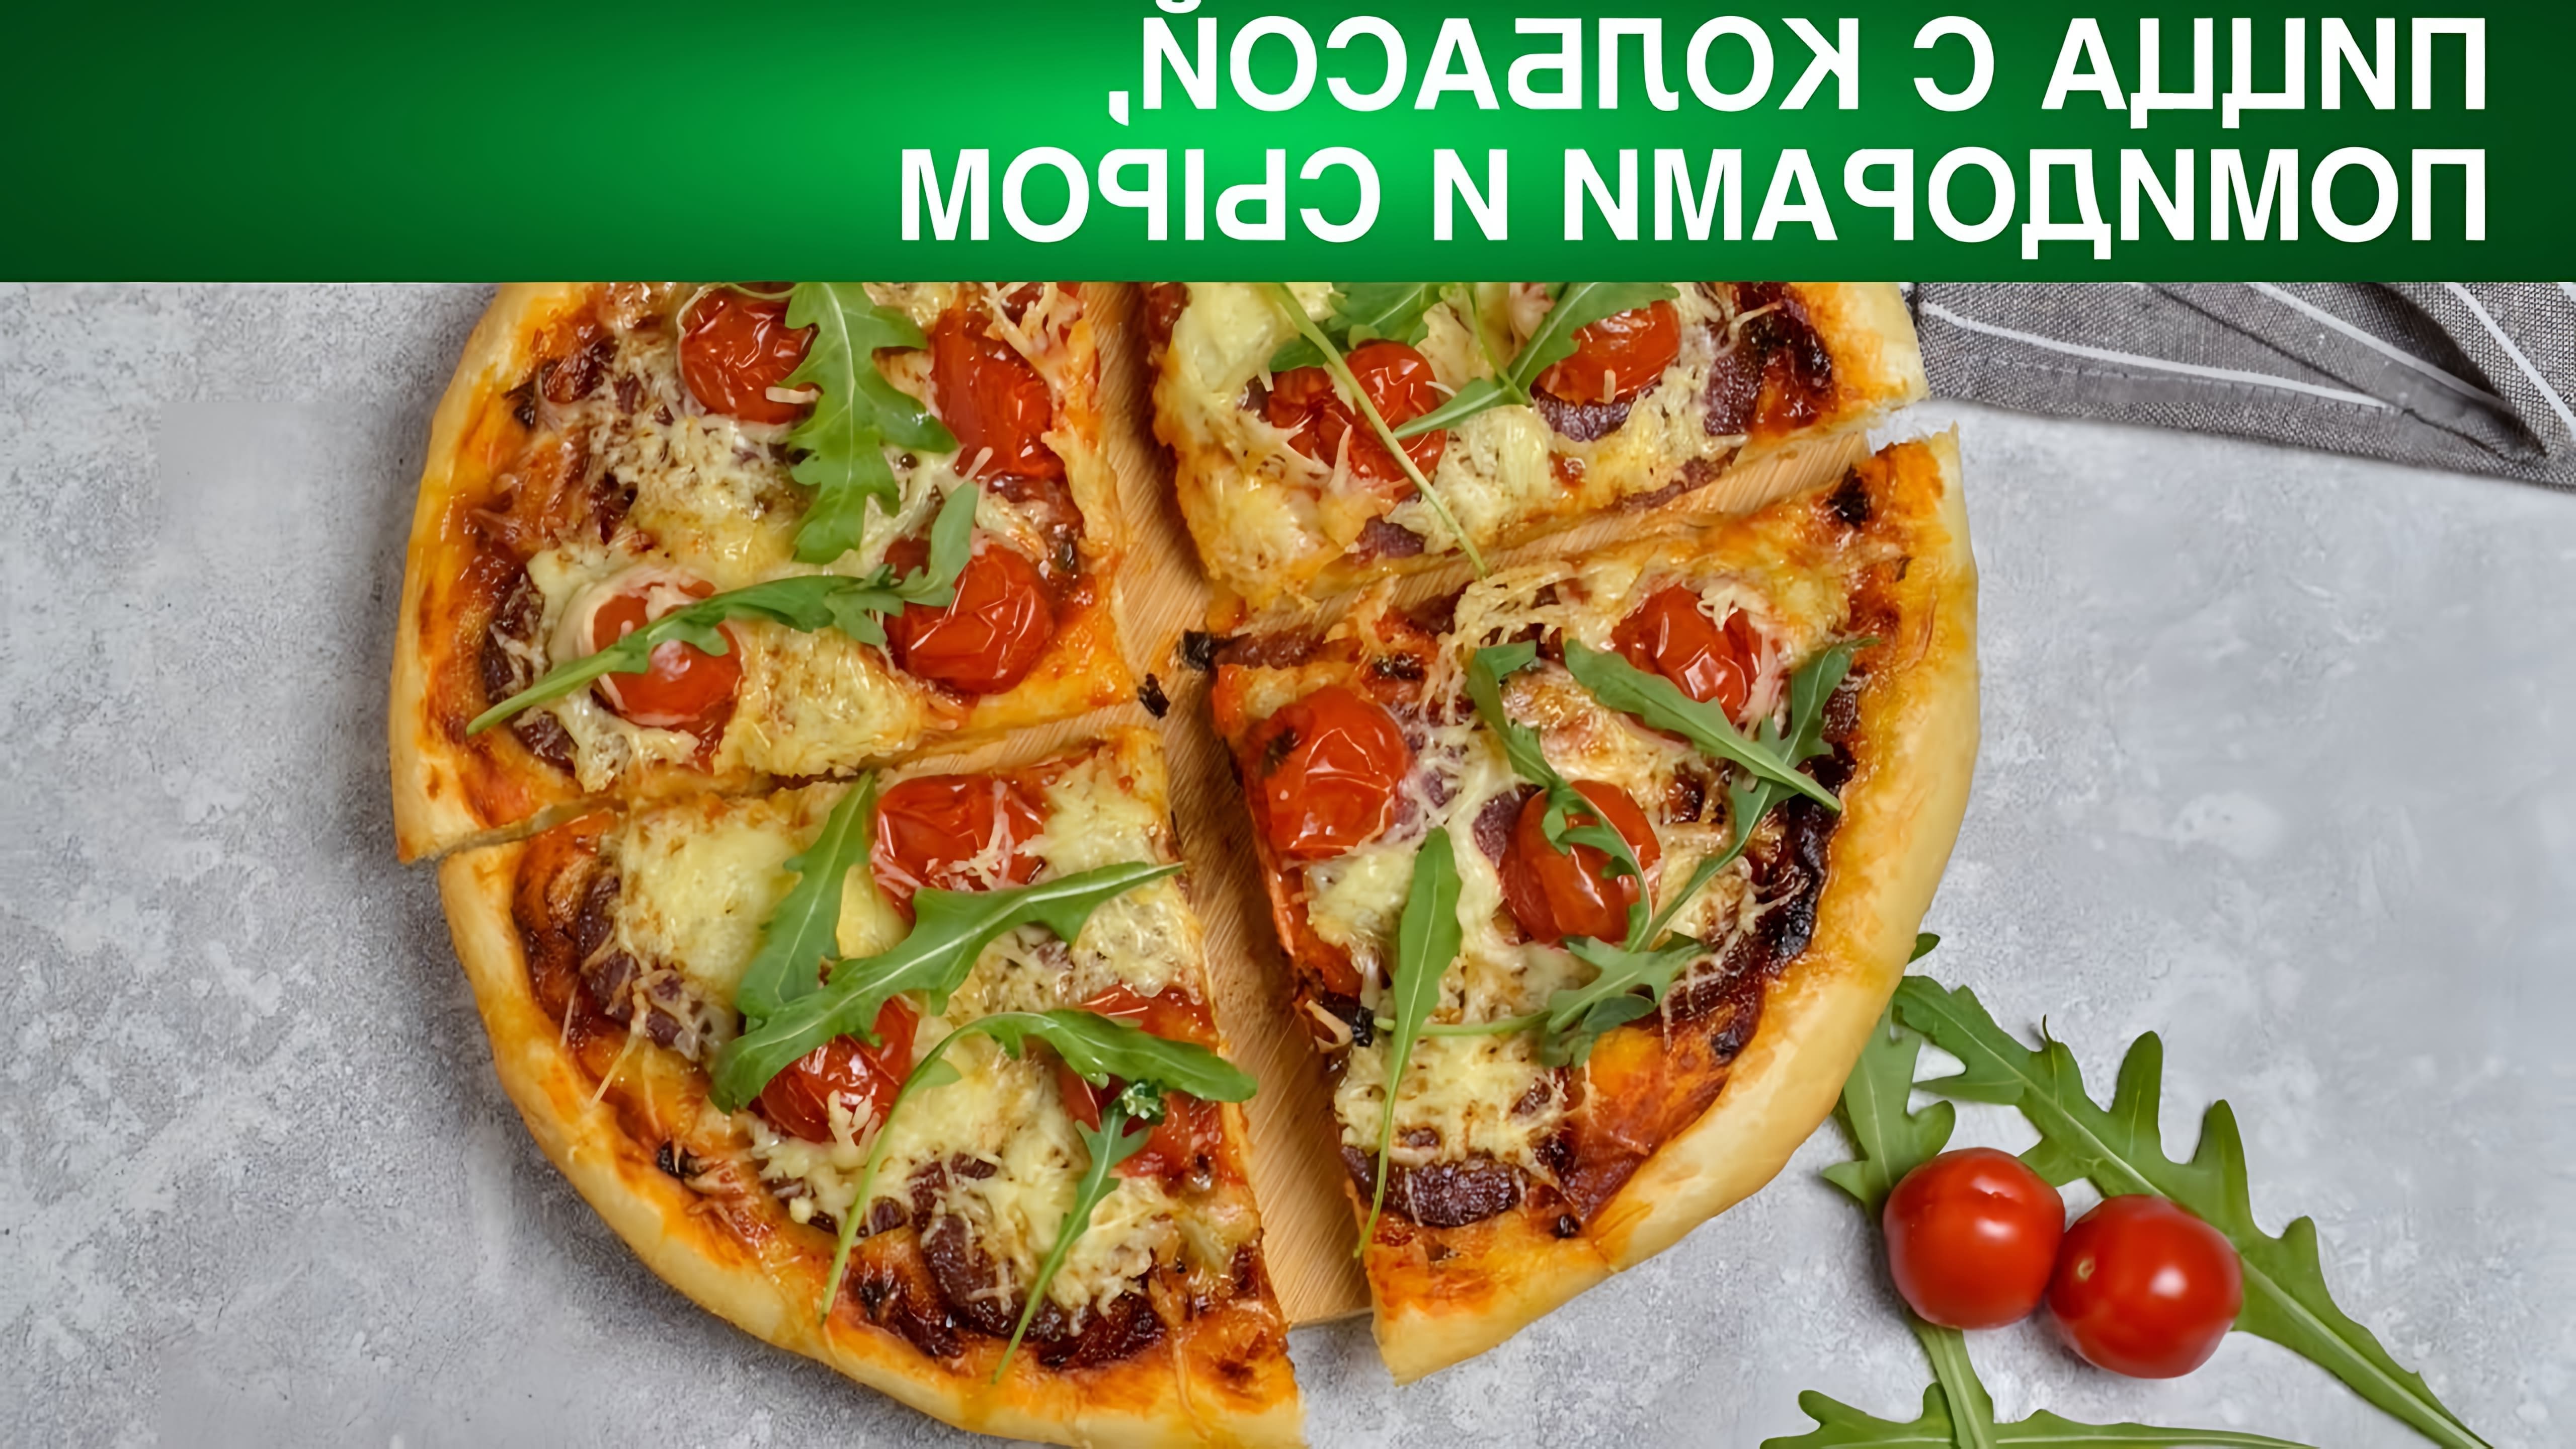 Пицца #ПростойРецепт #1000menu #ПиццаКолбасой #ПиццаСыром #Пицца #ПиццаПомидорами ДОМАШНЯЯ ПИЦЦА С... 